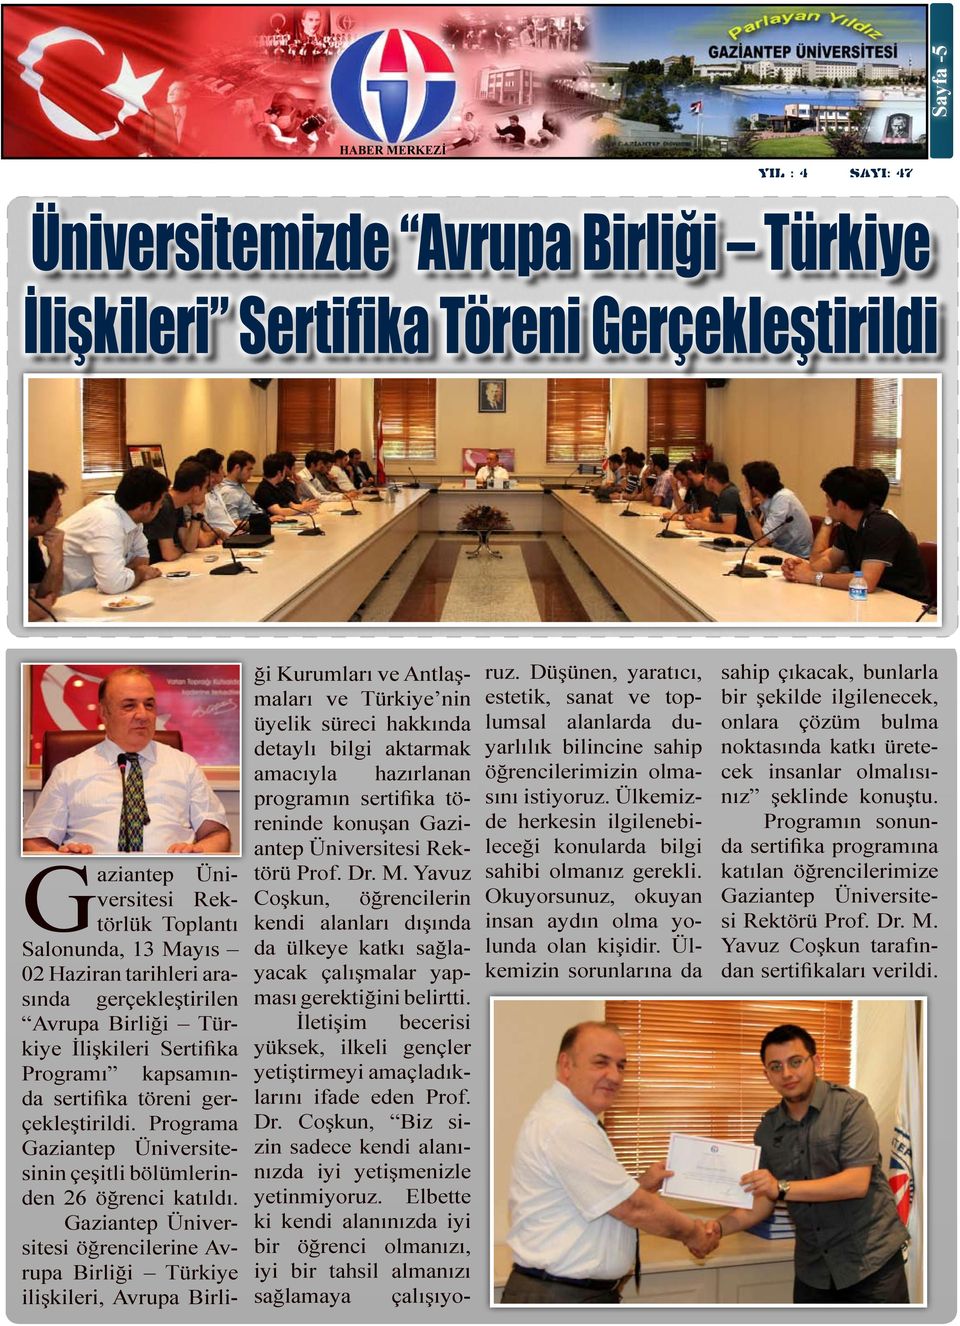 öğrencilerine Avrupa Birliği Türkiye ilişkileri, Avrupa Birli- ği Kurumları ve Antlaşmaları ve Türkiye nin üyelik süreci hakkında detaylı bilgi aktarmak amacıyla hazırlanan programın sertifika